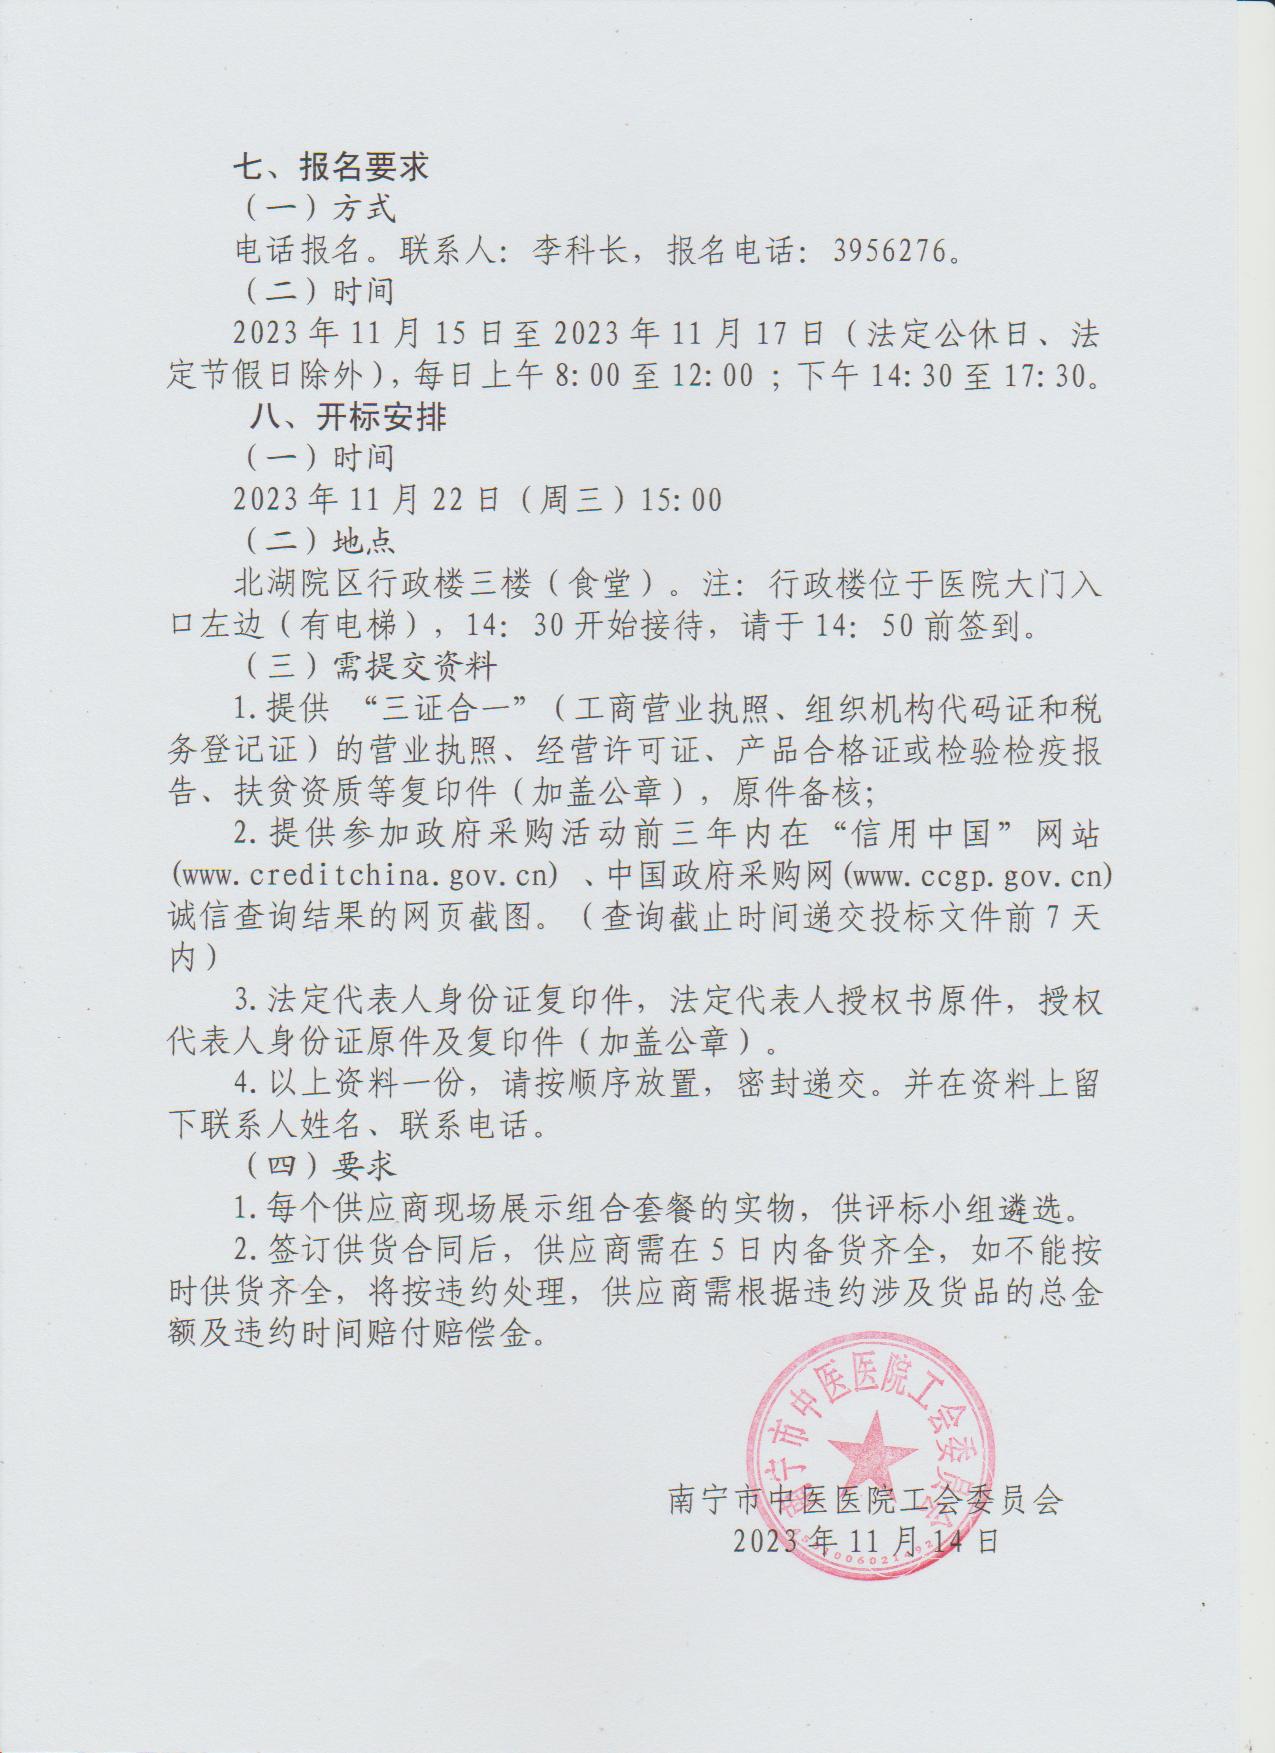 南宁市中医医院工会委员会关于 2024 年元旦慰问品院内招标的公告2.jpg